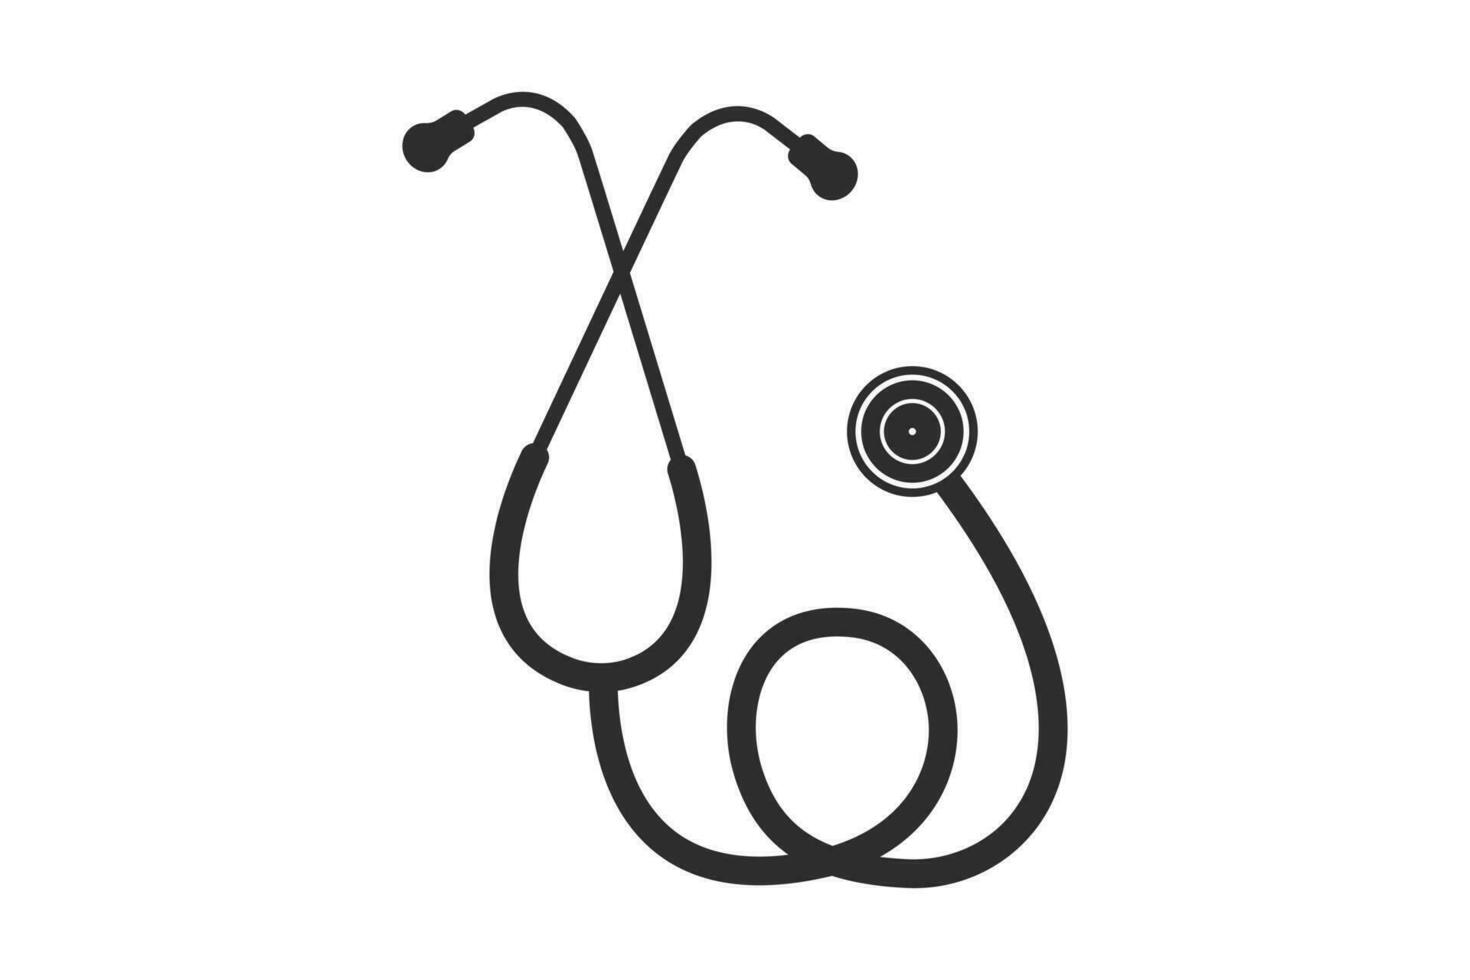 stetoskop vektor, medicinsk verktyg vektor, stetoskop illustration, läkare, sjuksköterska, hälsa, illustration, klämma konst, medicinsk illustration vektor